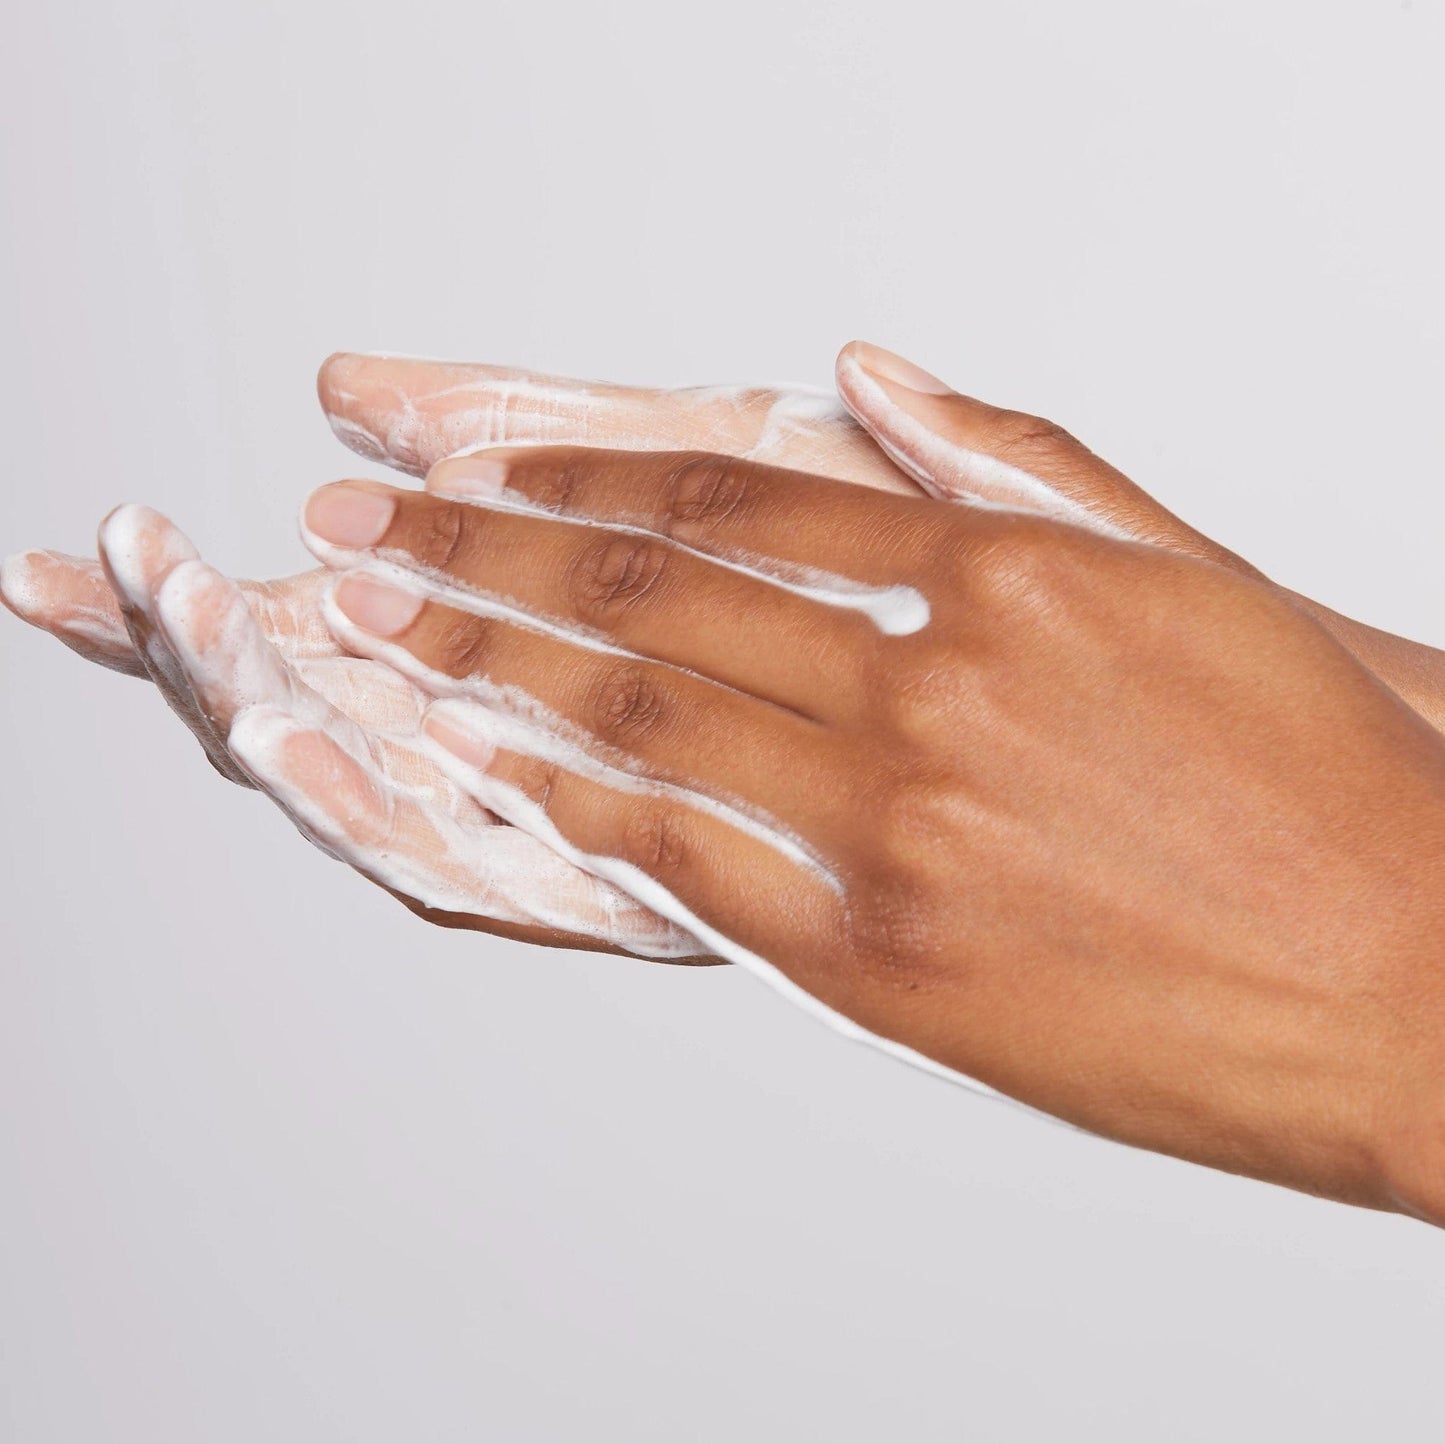 Die Hände einer Frau mit Daily Microfoliant entfernen sanft abgestorbene Hautzellen und sorgen für einen glatteren und strahlenderen Teint.